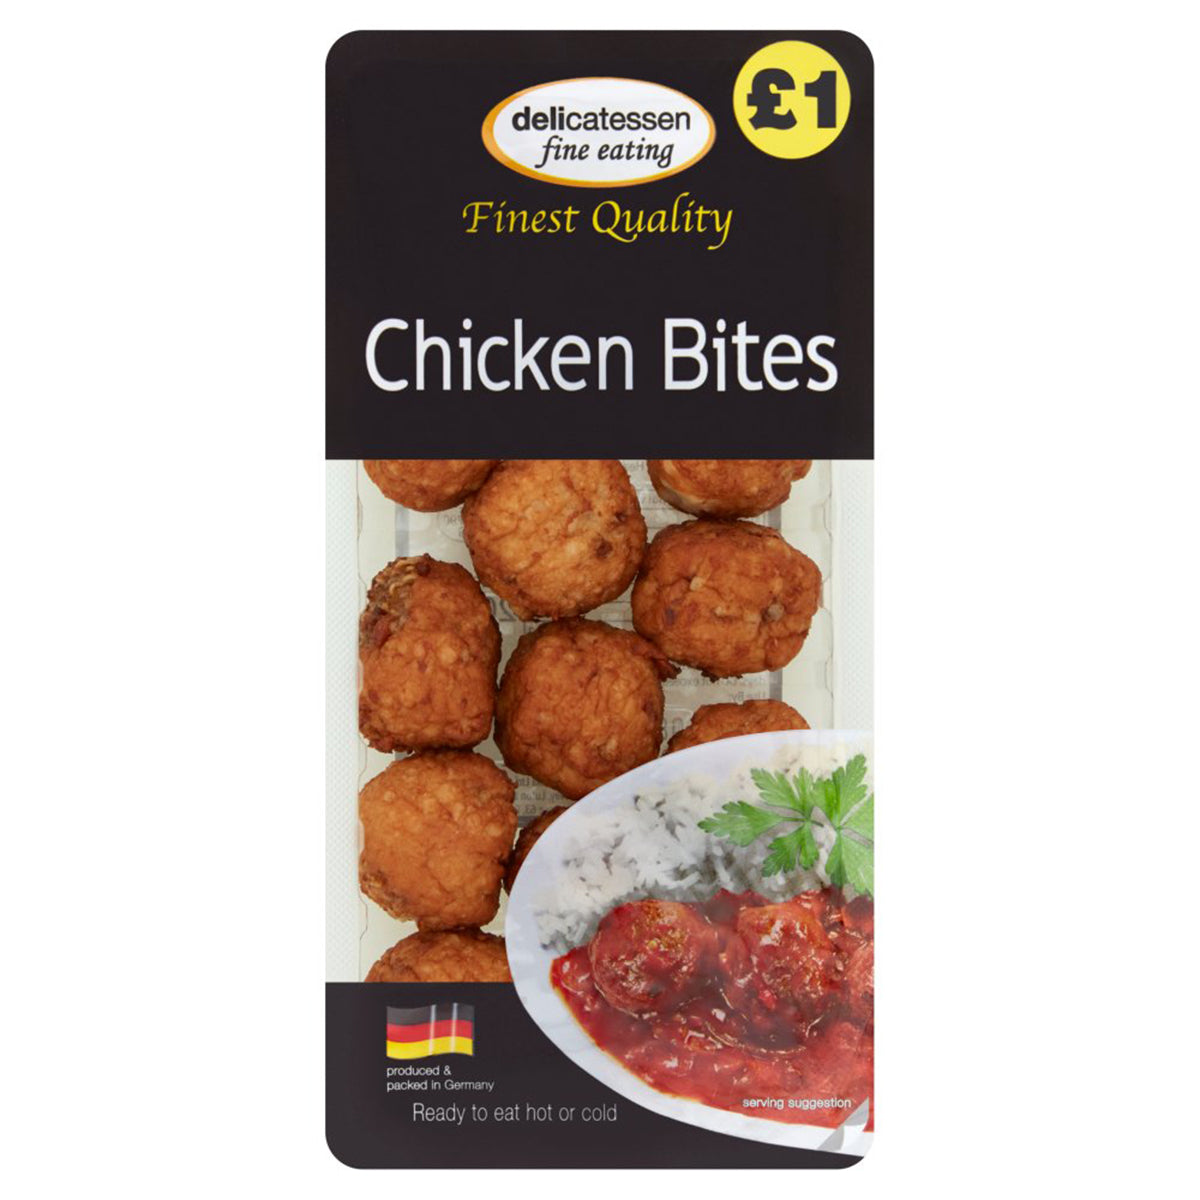 Delicatessen - Chicken Bites - 200g - Continental Food Store